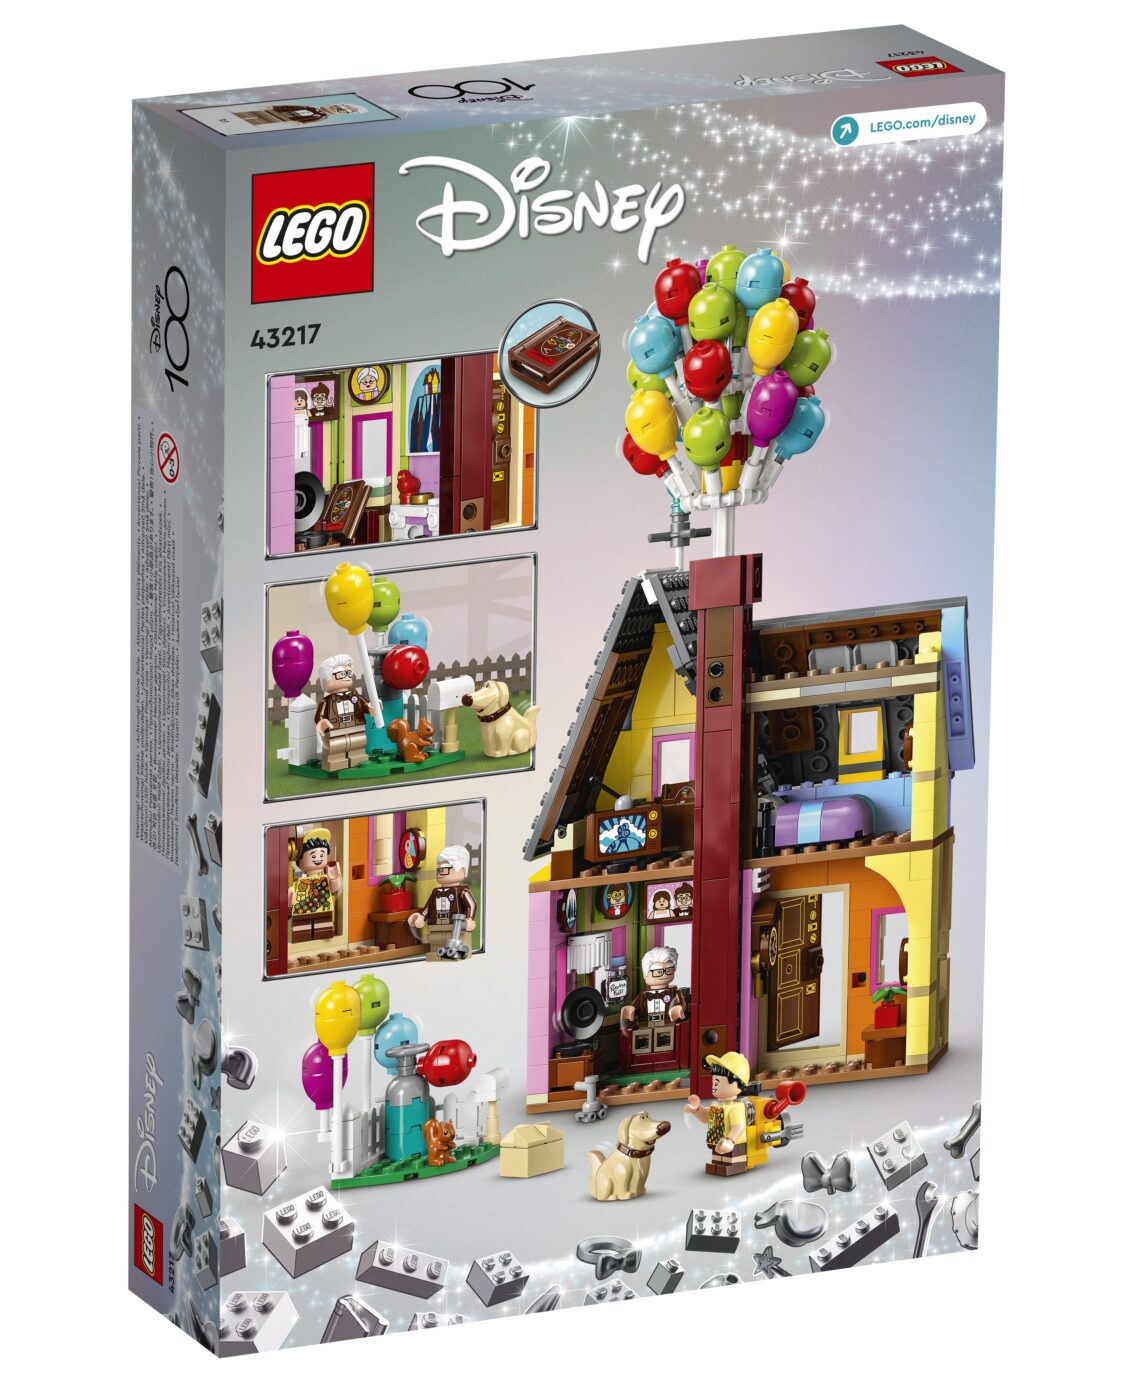 LEGO 43217 Up House Box Back